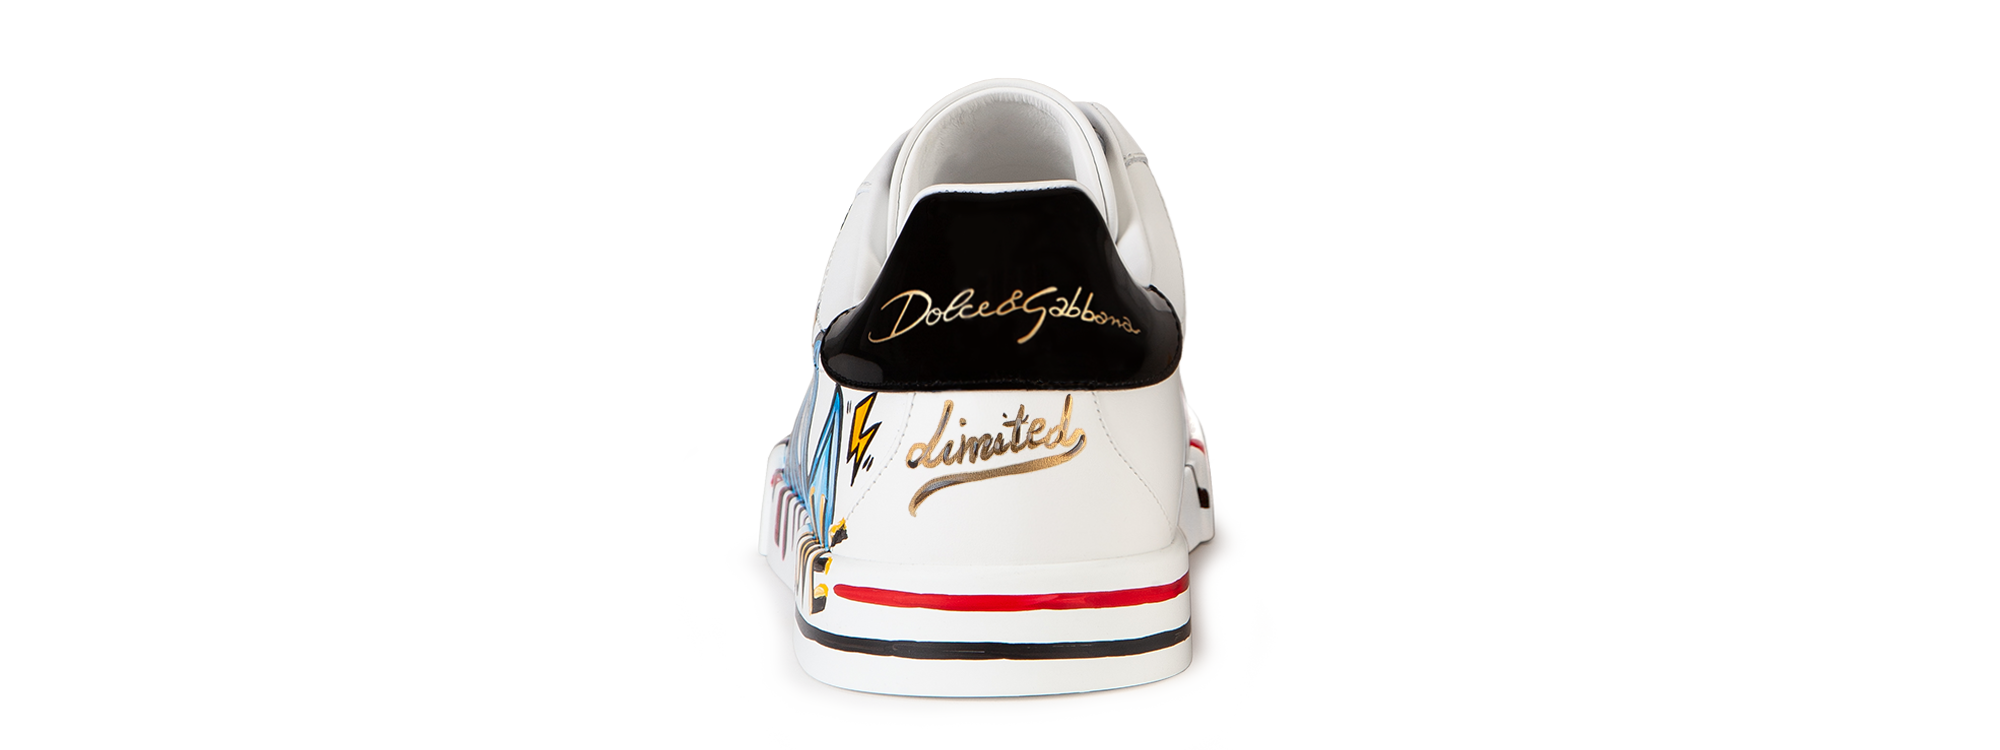 Dolce & Gabbana ポルトフィーノ スニーカー NEW DGLIMITED - メンズ ホワイト CS1558B5811